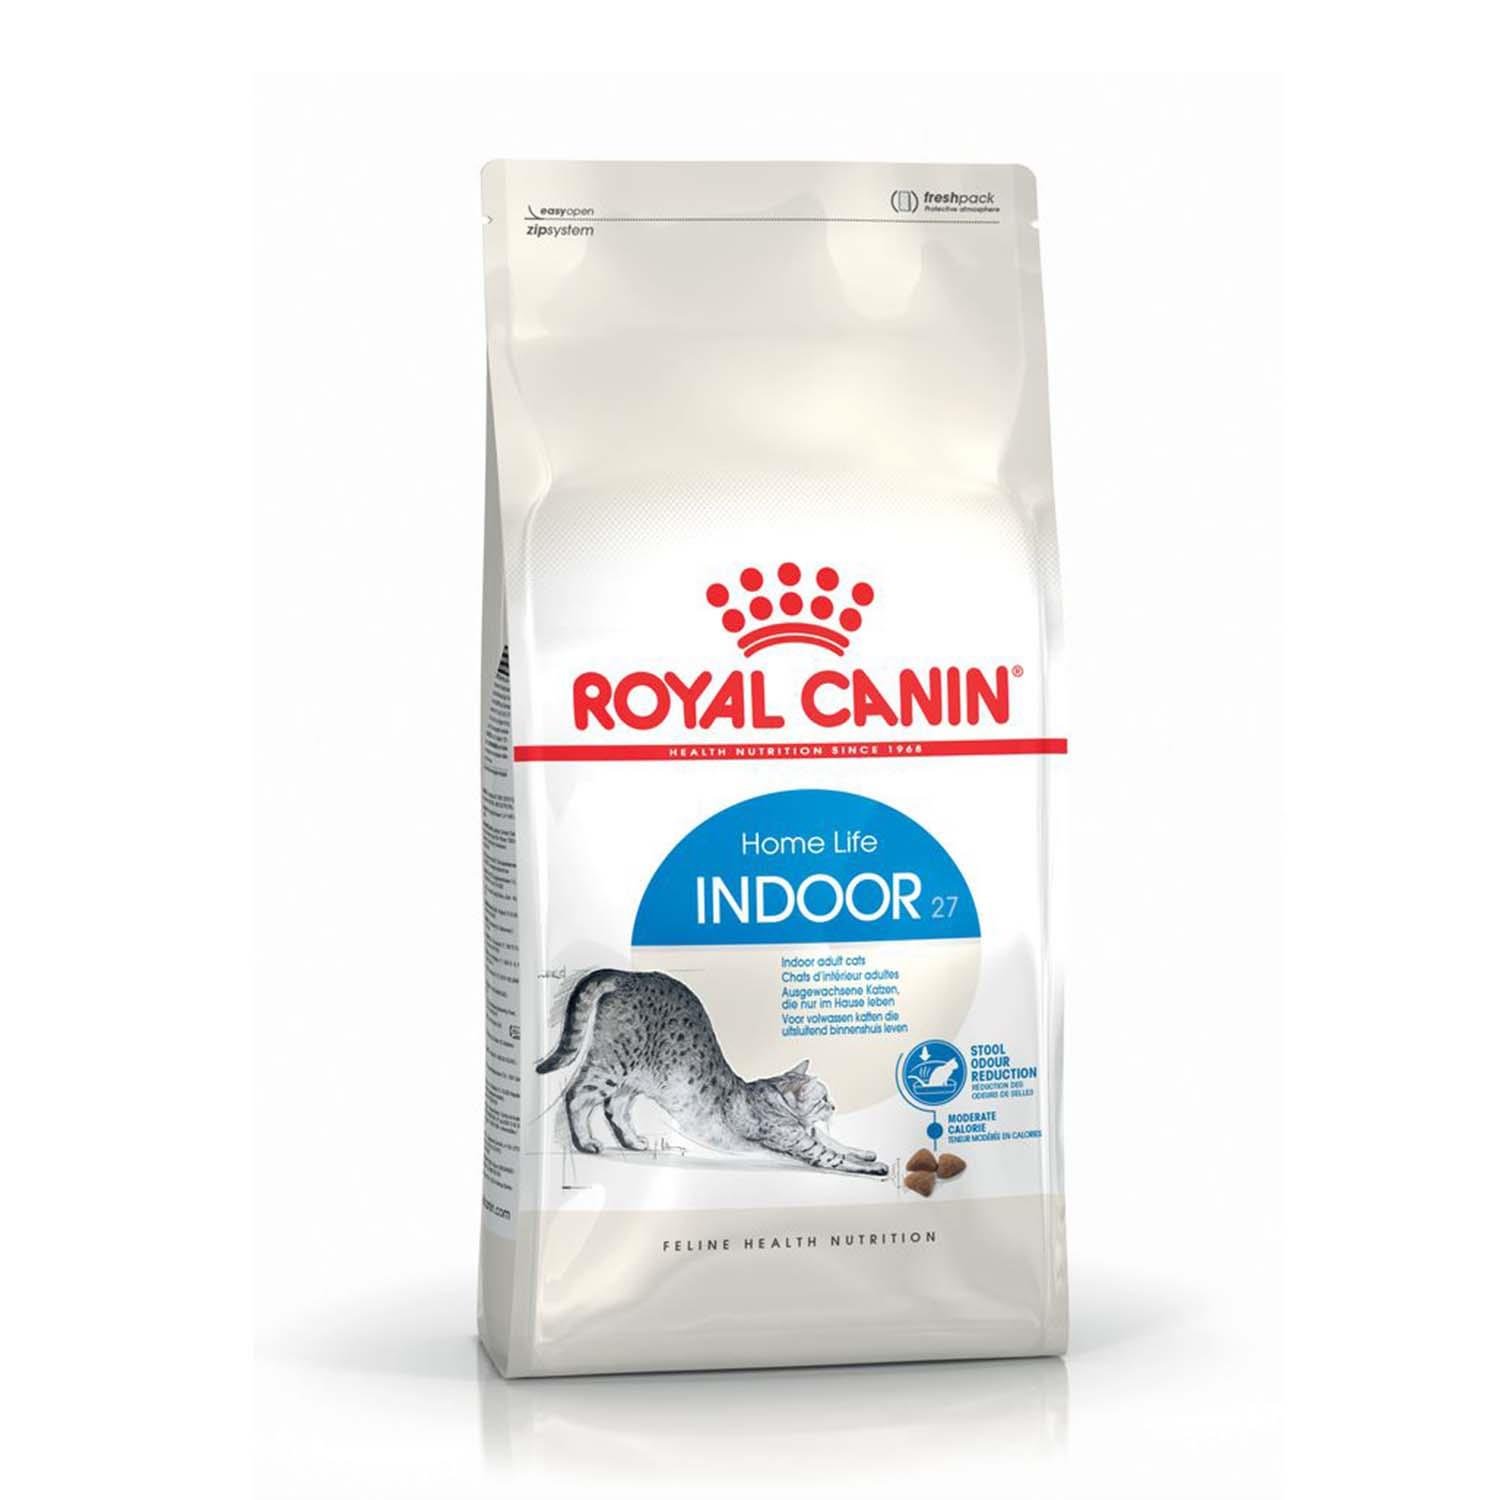 Royal Canin Indoor 27 Evden Çikmayan Kedilere Özel Mama 2 Kg